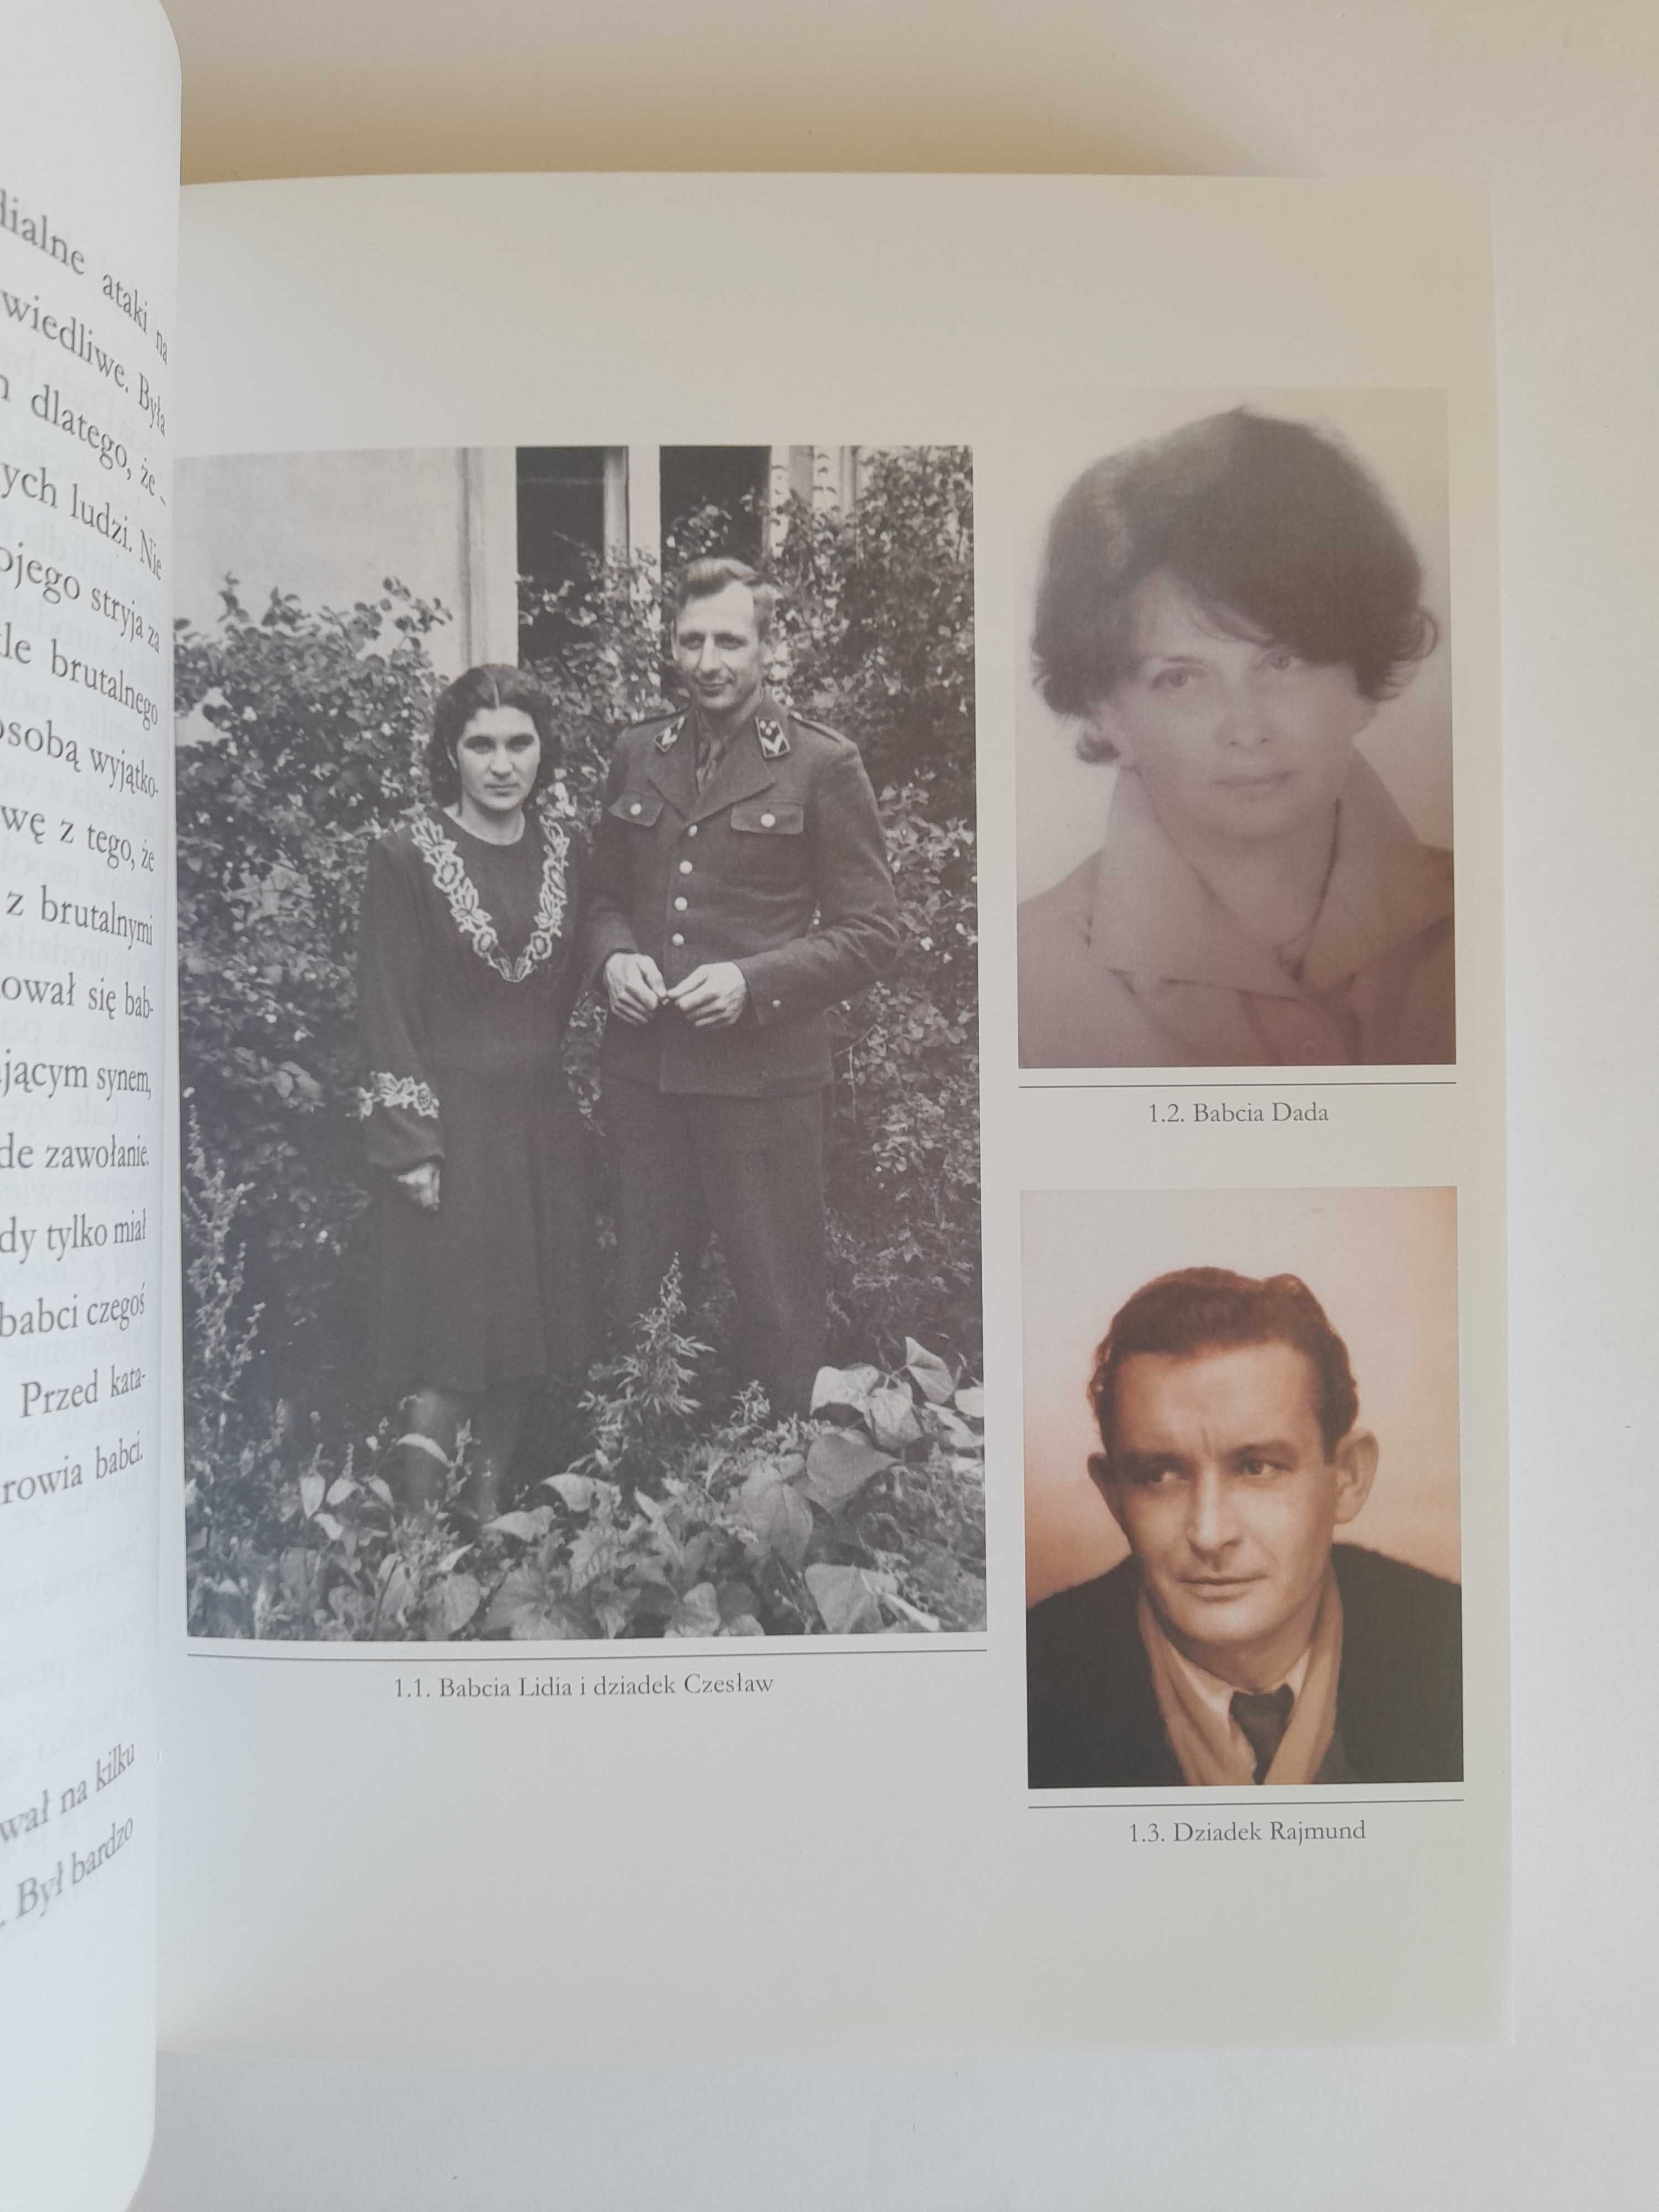 Moi rodzice Dorota Łosiewicz, MARTA KACZYŃSKA